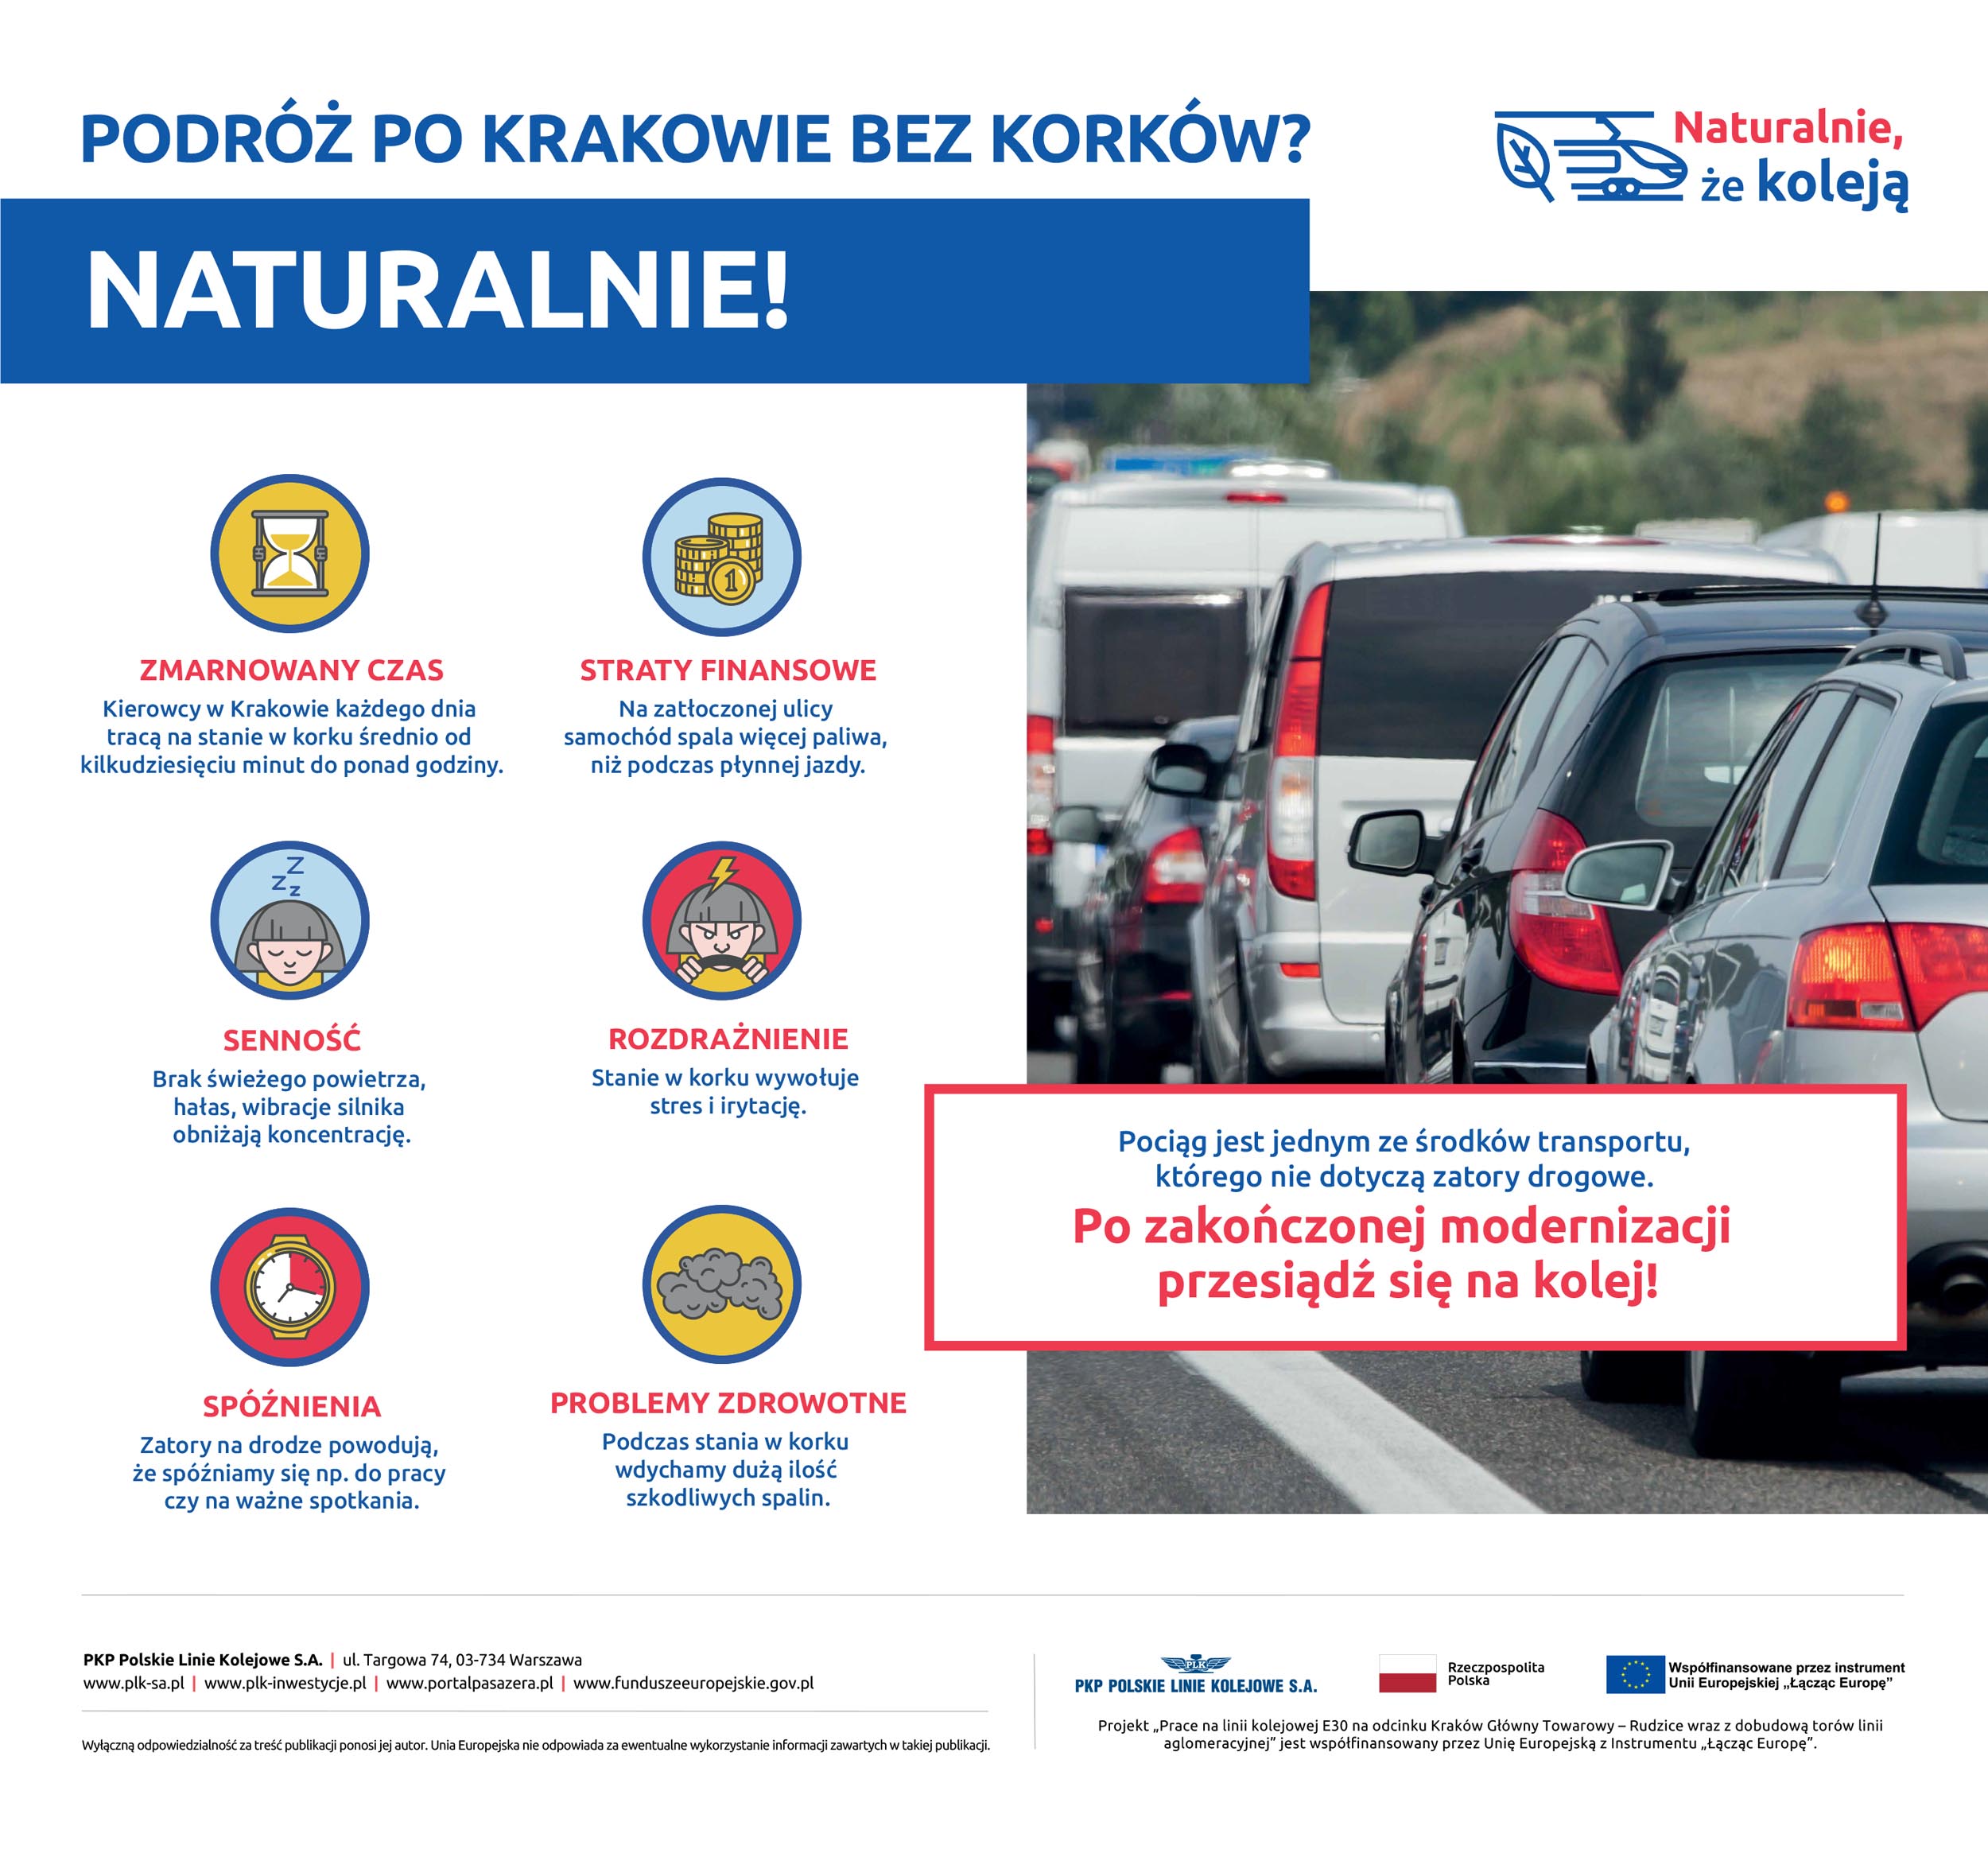 Infografika z cyklu Naturalnie, że koleją obrazująca negatywne skutki podróży samochodem po zakorkowanym Krakowie.